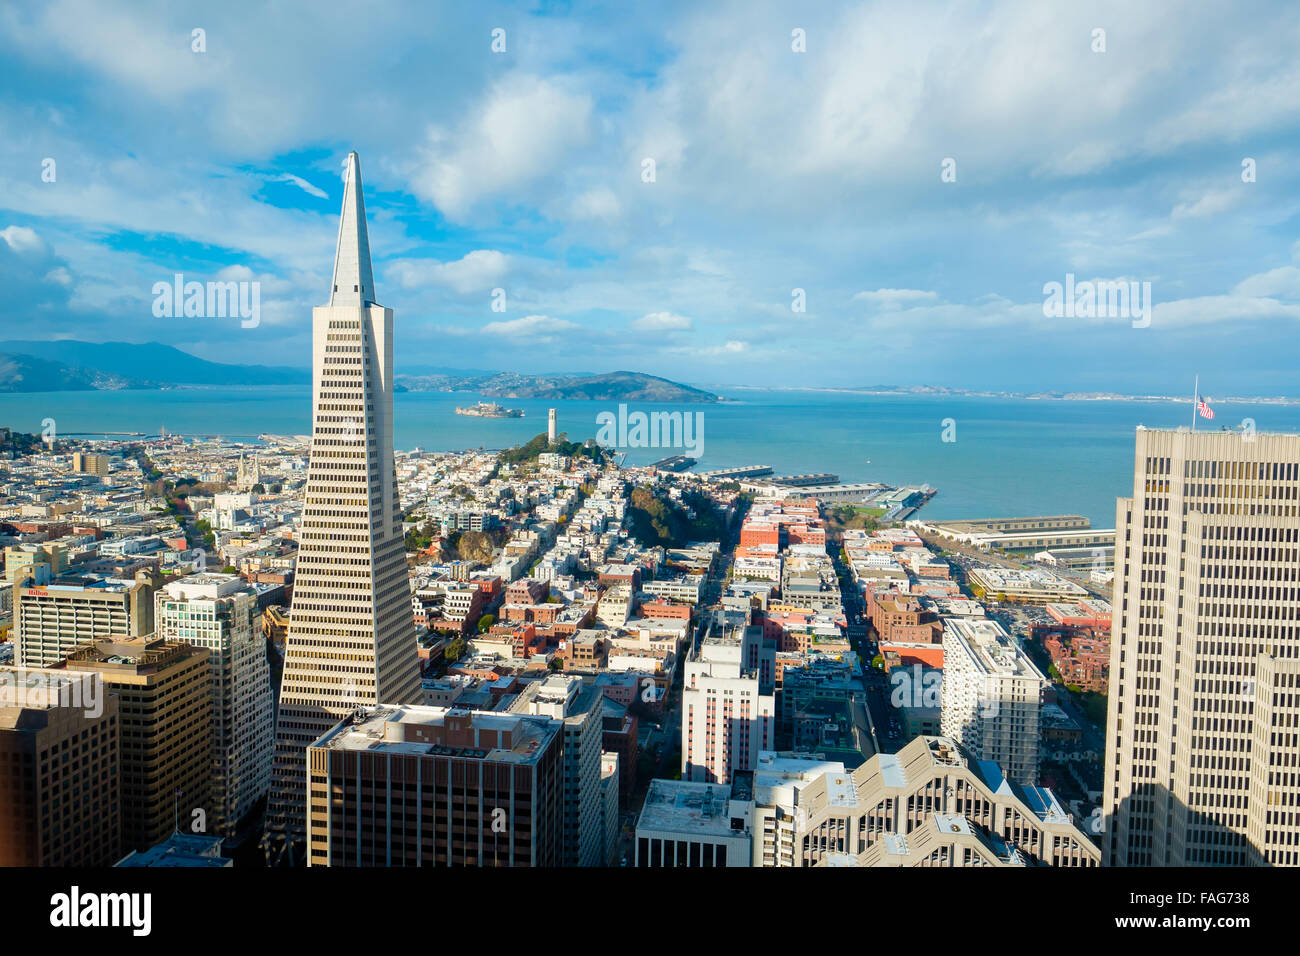 Vistas a la ciudad de San Francisco desde muy alto en un hotel edificio mirando al norte hacia la bahía, con la Isla de Alcatraz. Foto de stock